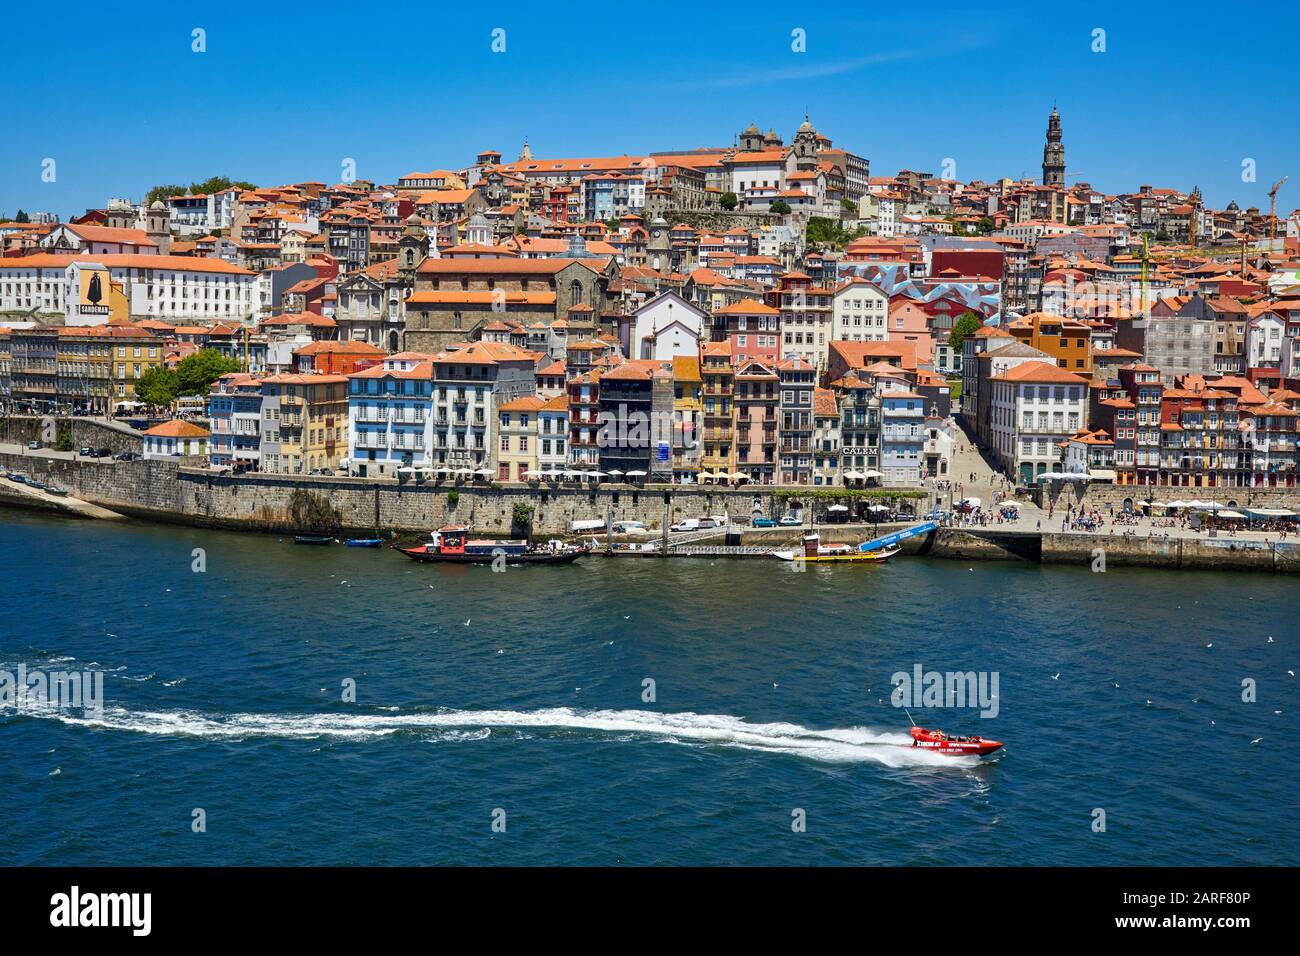 Cais da Ribeira, Rio Douro river, Porto, Portugal Stock Photo